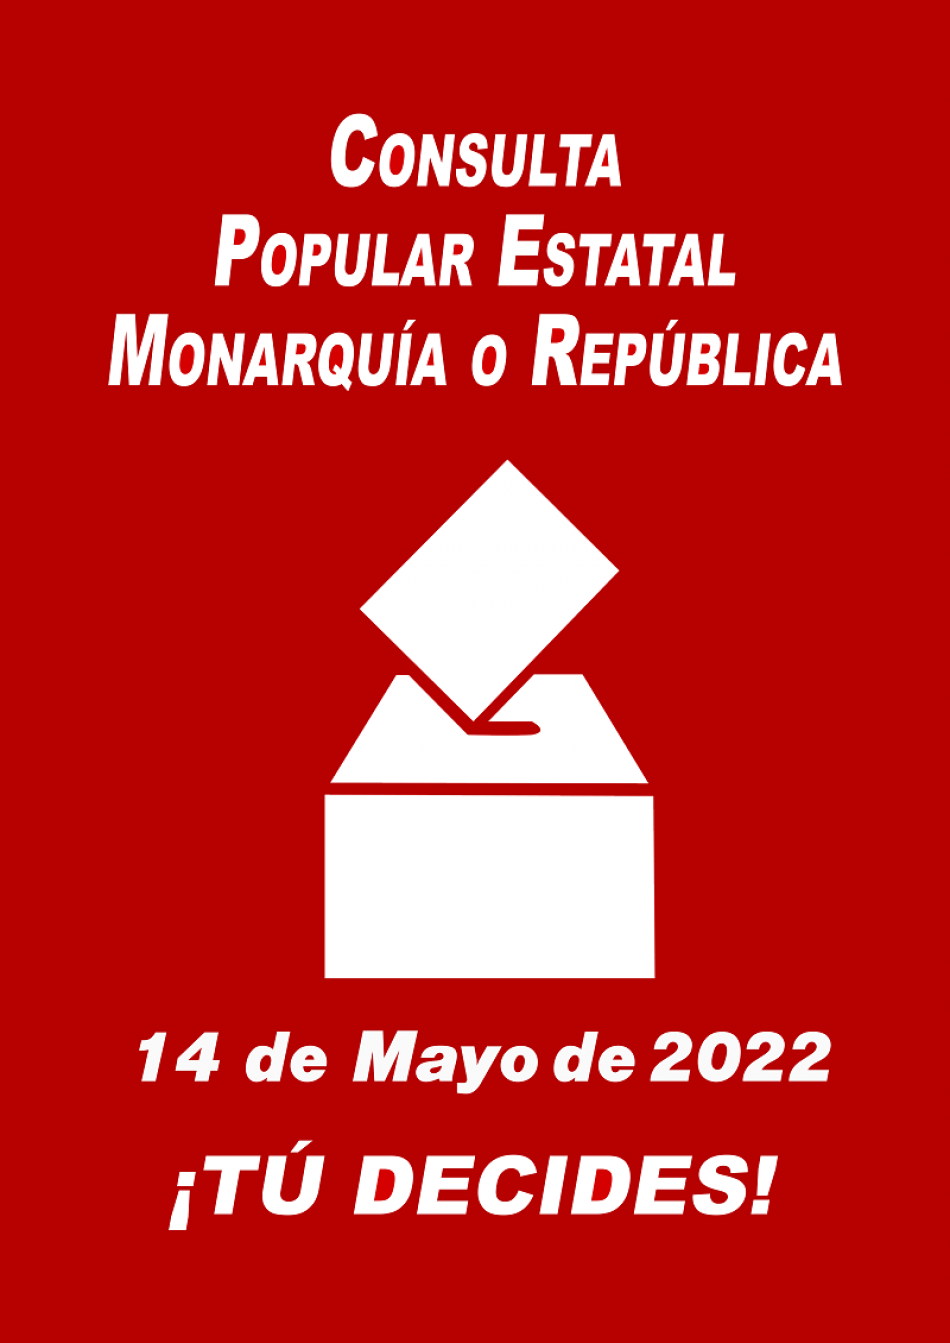 La consulta popular estatal monarquía o república será el 14 de mayo de 2022